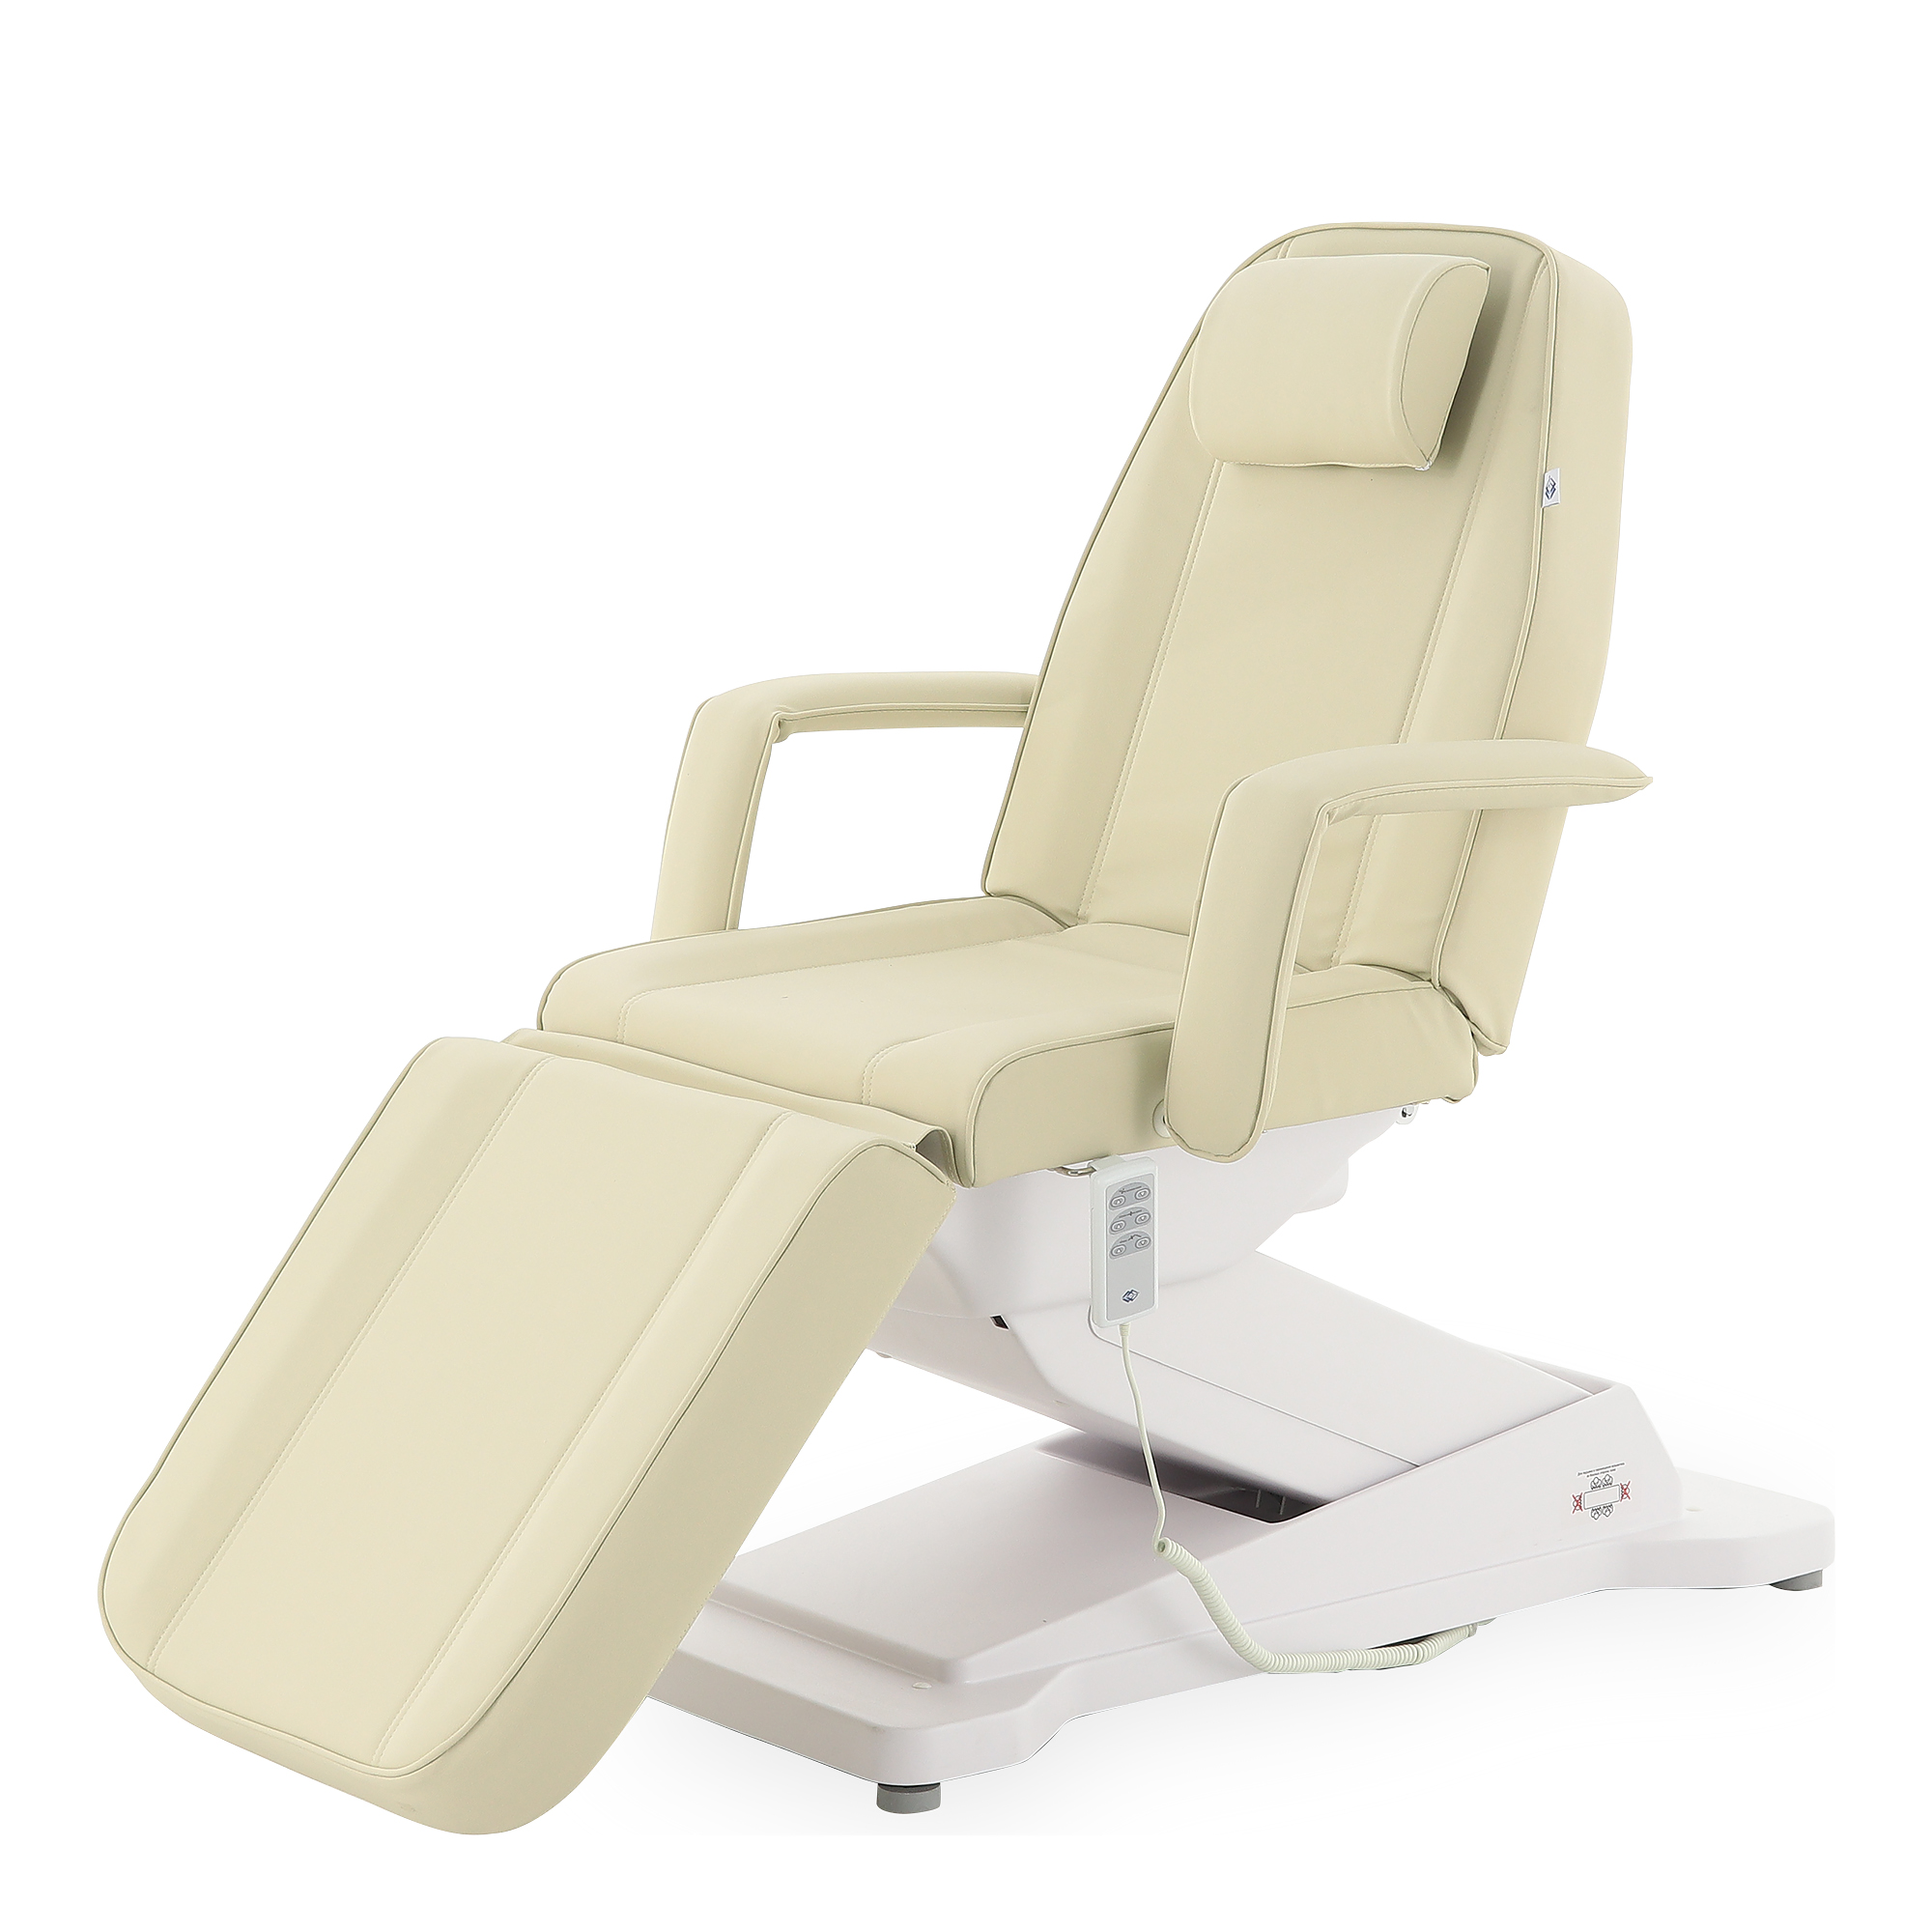 Купить Косметологическое кресло ММКК-1 (КО-171Д) одномоторное РУ Росздрава в интернет-магазине Salon Market по выгодным ценам